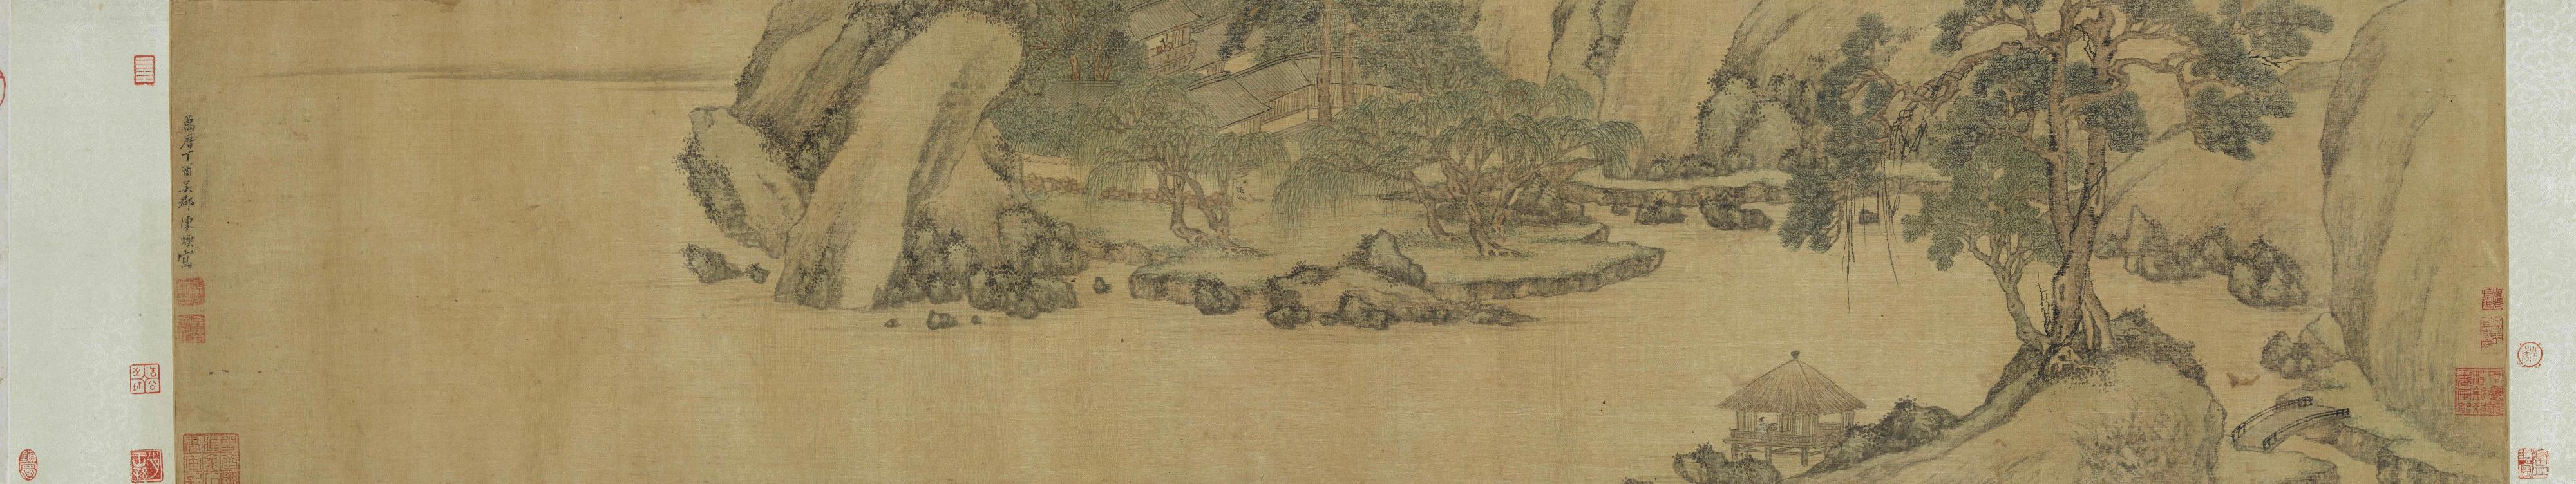 香港艺术馆举办展览「另眼相看──中国书画的装裱与保护」，透过艺术与科学的角度，分析和拆解中国书画，让市民窥探博物馆幕后的修复和保护工作。展览今日（三月二十二日）起在香港艺术馆展出。图示陈焕（活跃于约1573－1620）的《五柳居图》。